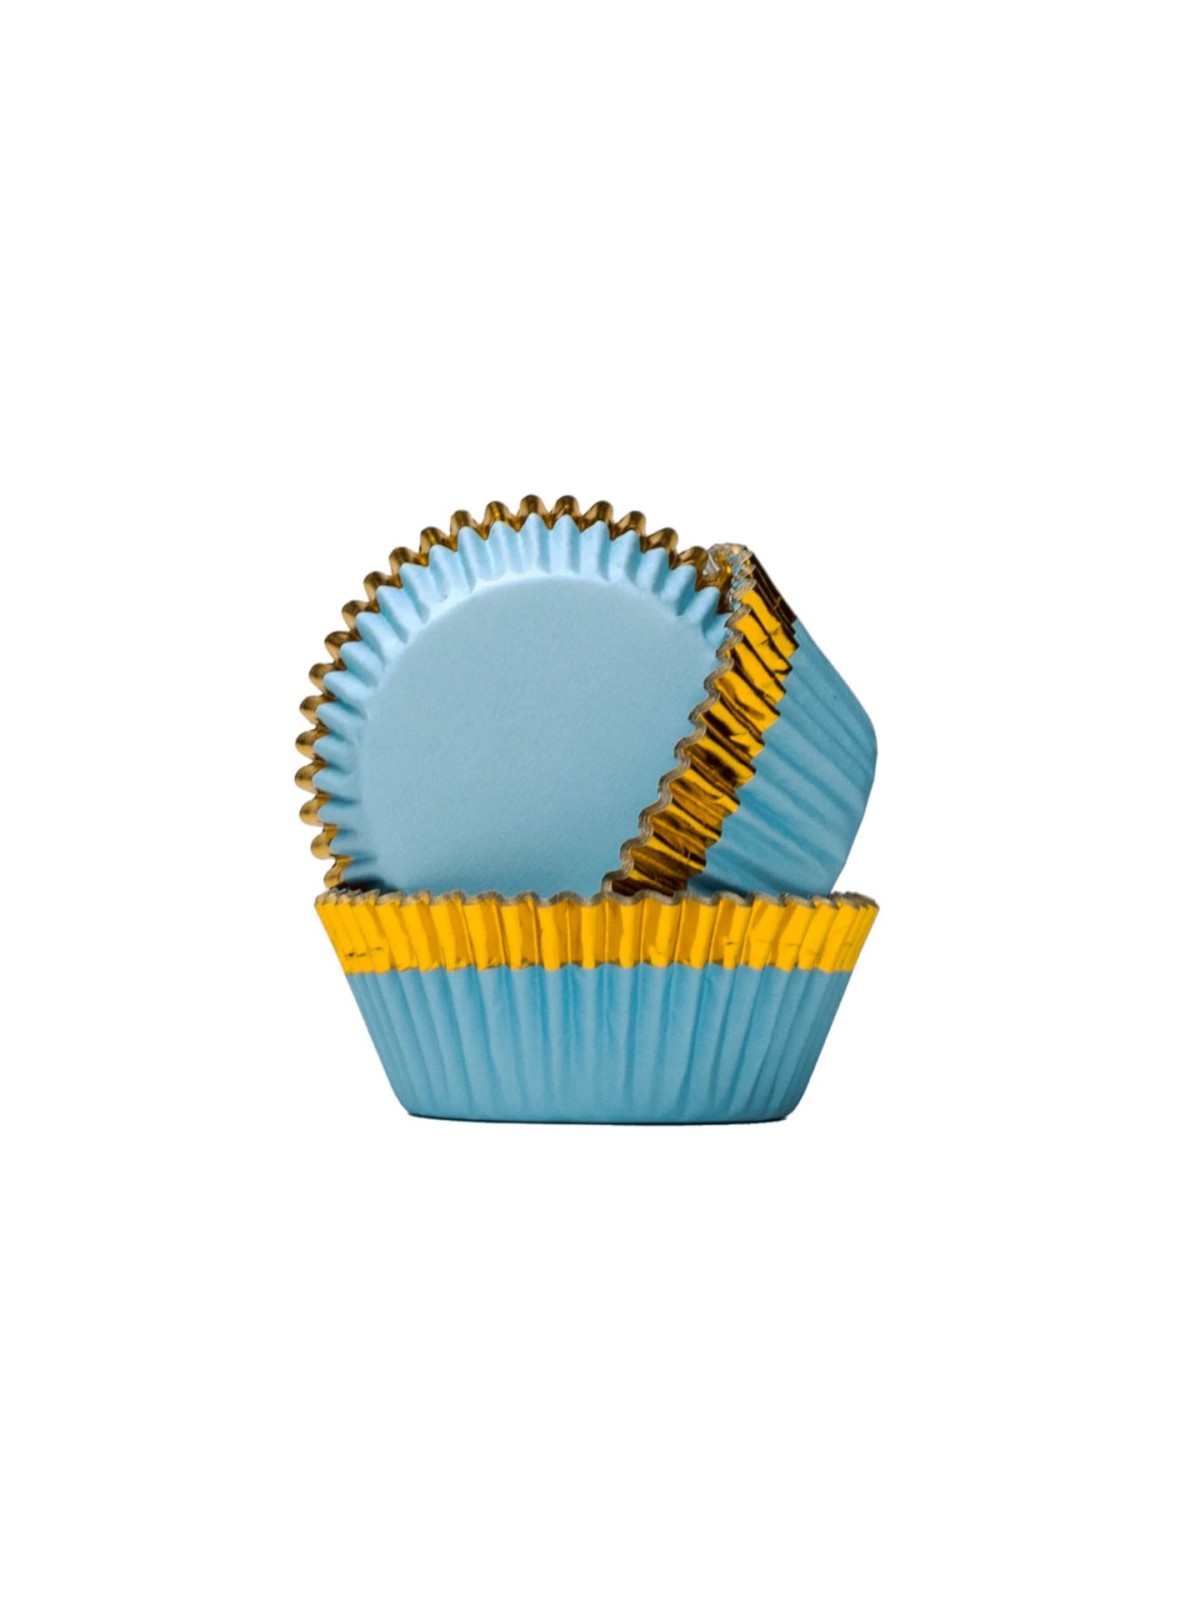 PME Foil Baking cups - blue with gold trim- 30 pcs